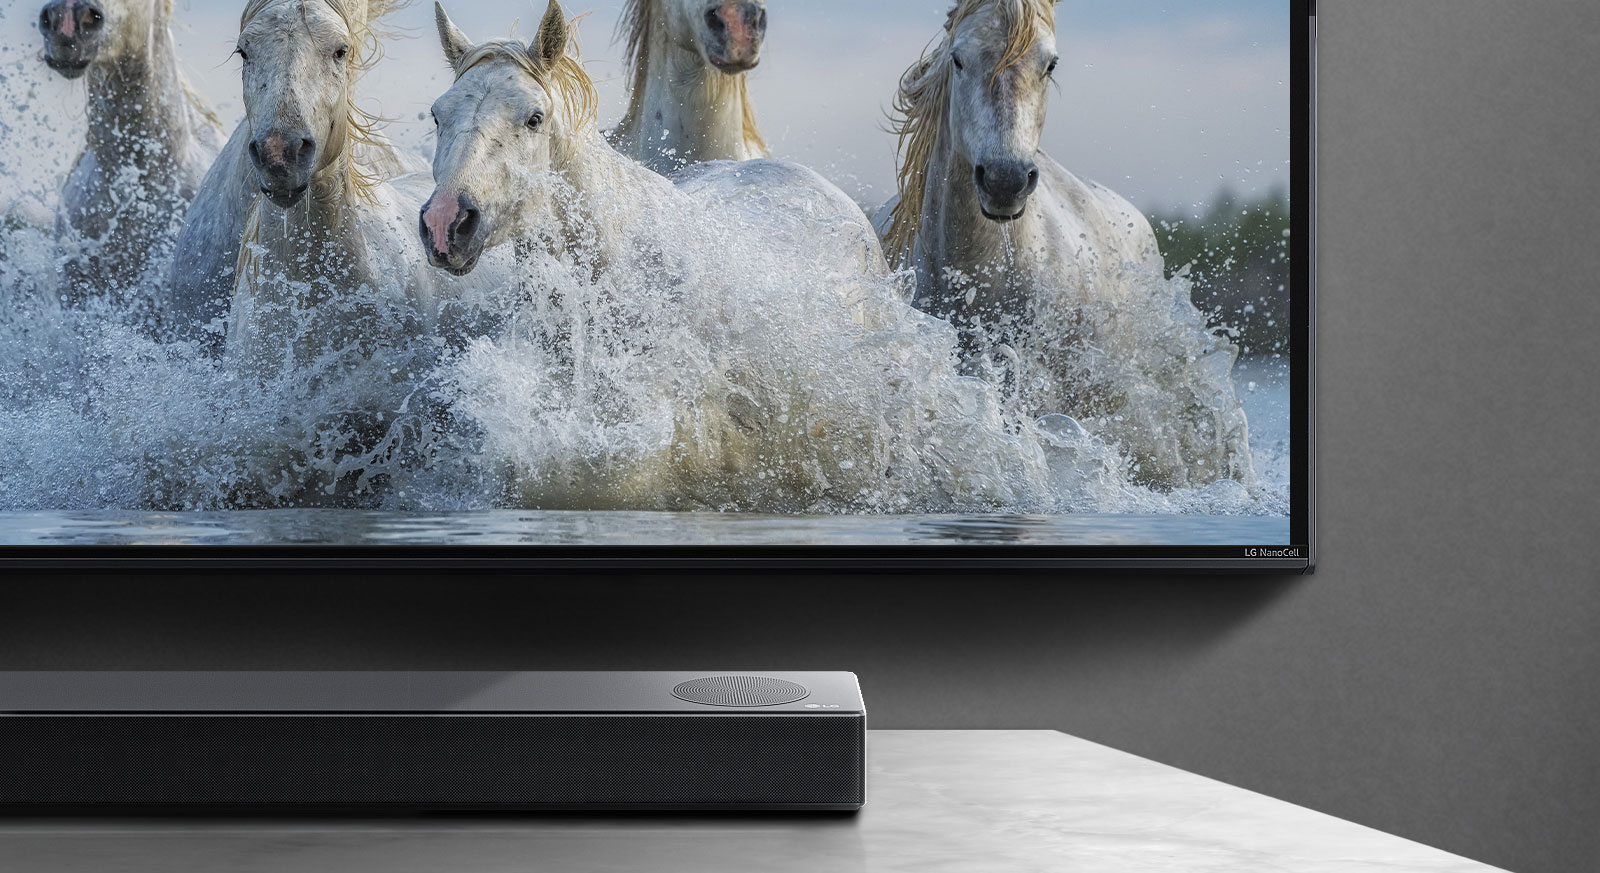 Polovina donjeg dela ekrana i polovina Soundbar zvučnika. Na televizoru se prikazuju beli konji koji trče iznad vode. 